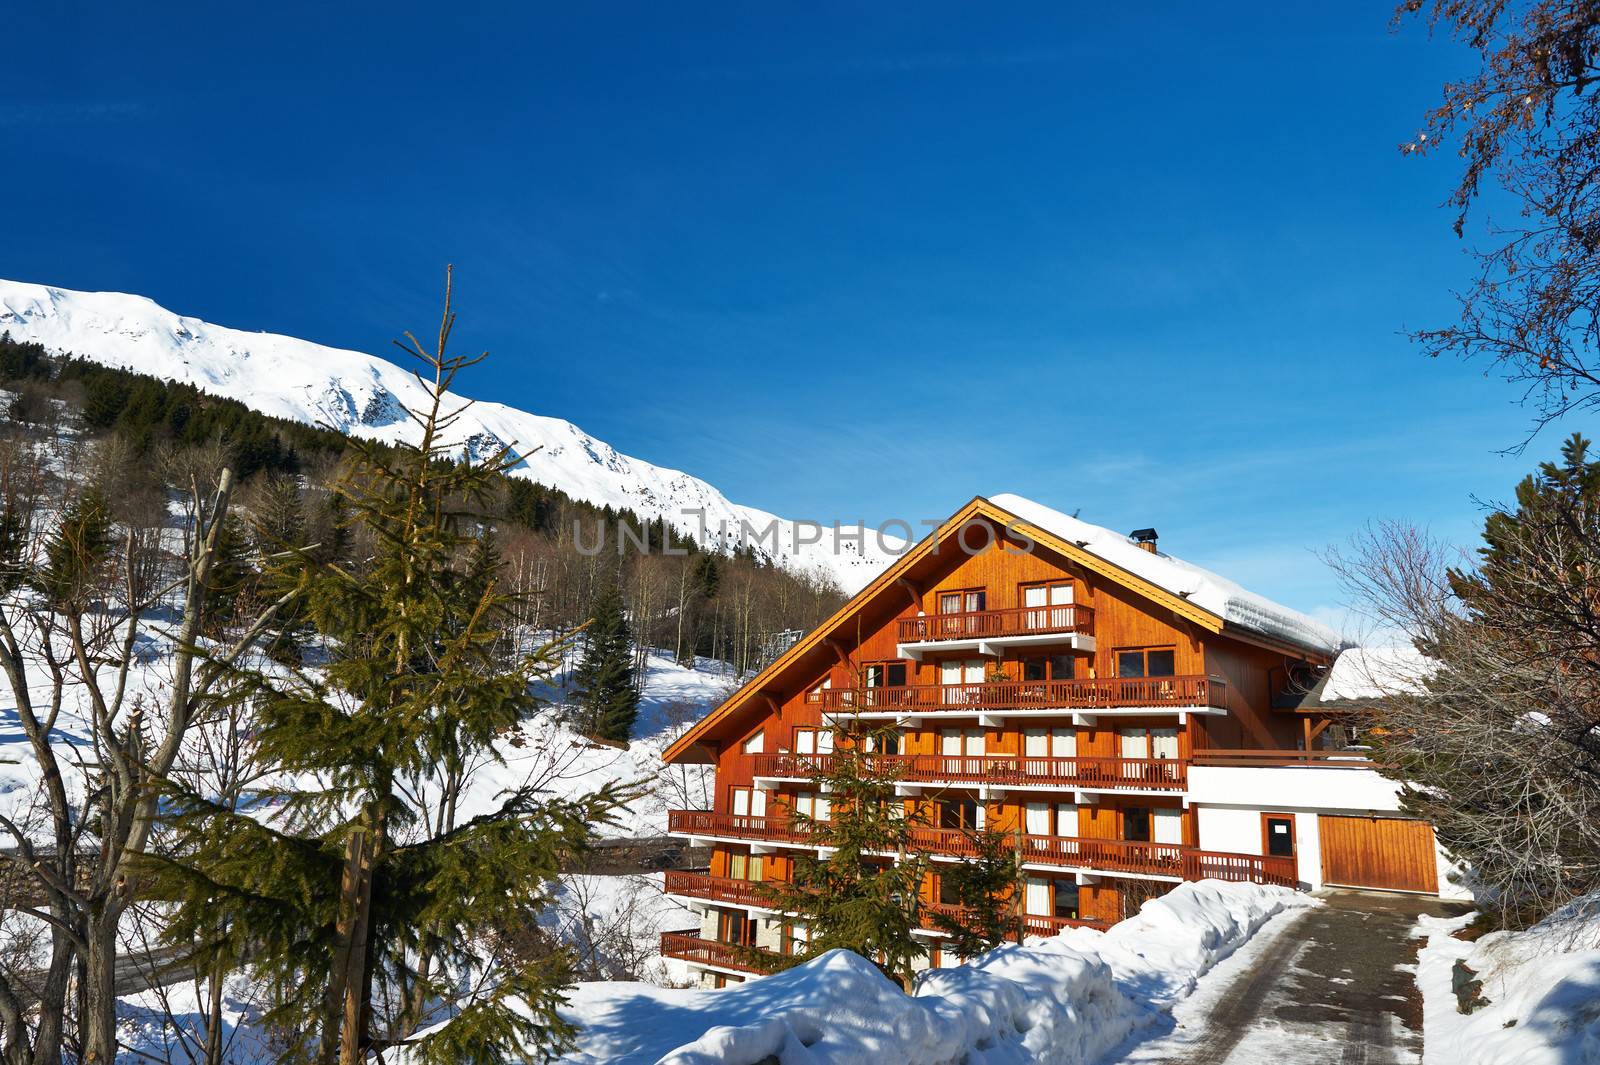 Mountain ski resort with snow in winter, Meribel, Alps, France